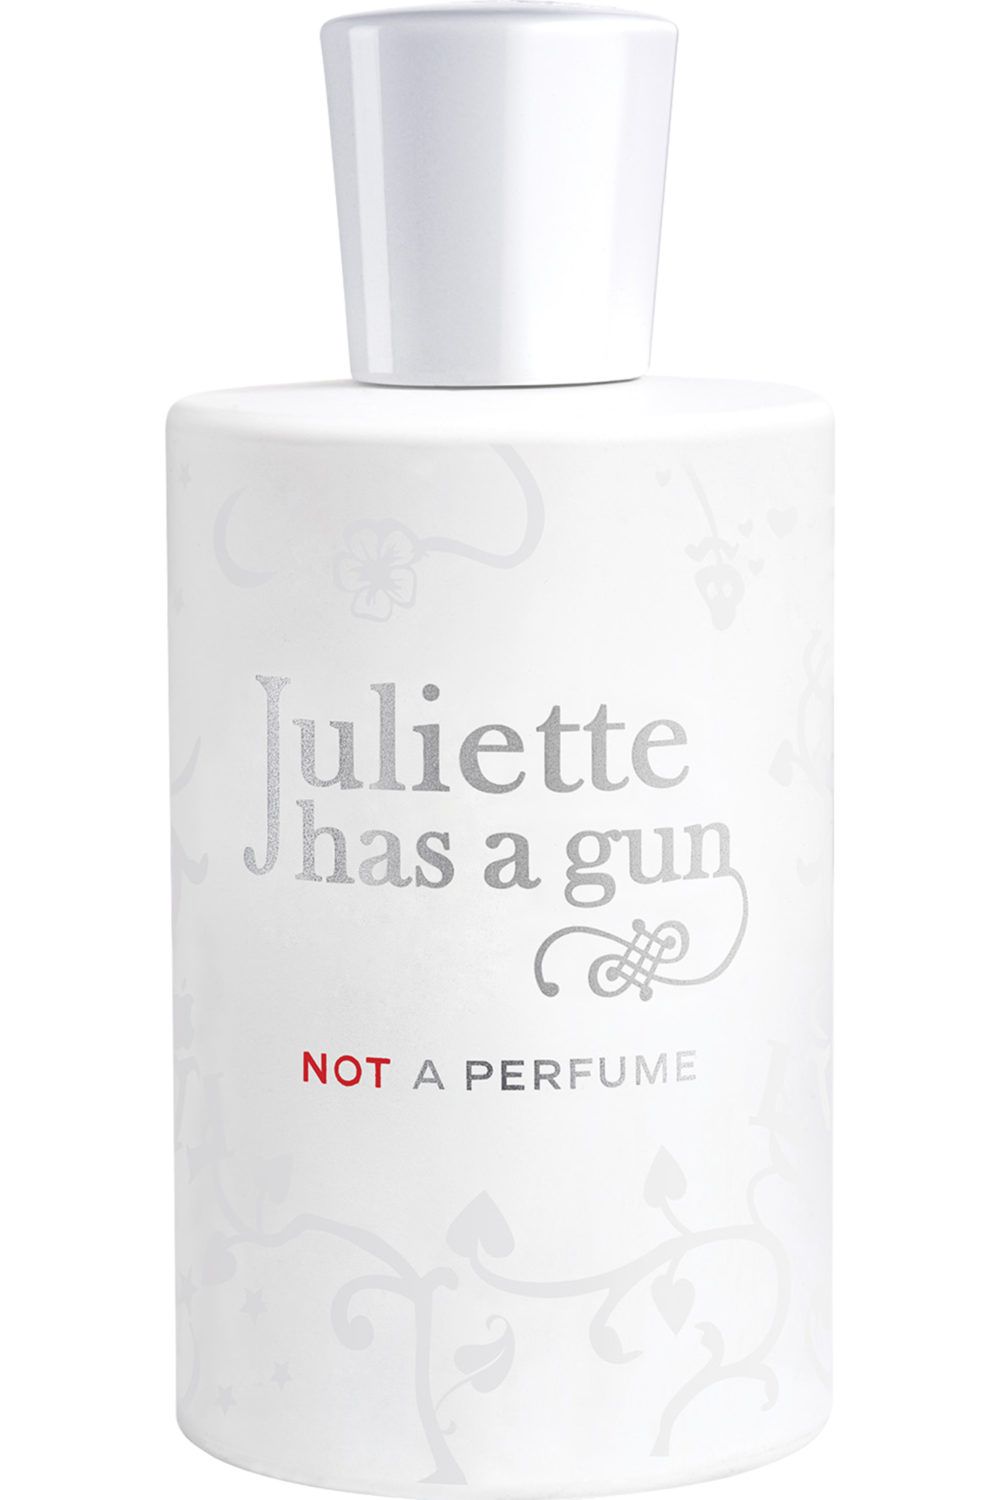 Juliette Has A Gun - Eau de Parfum Not A Perfume